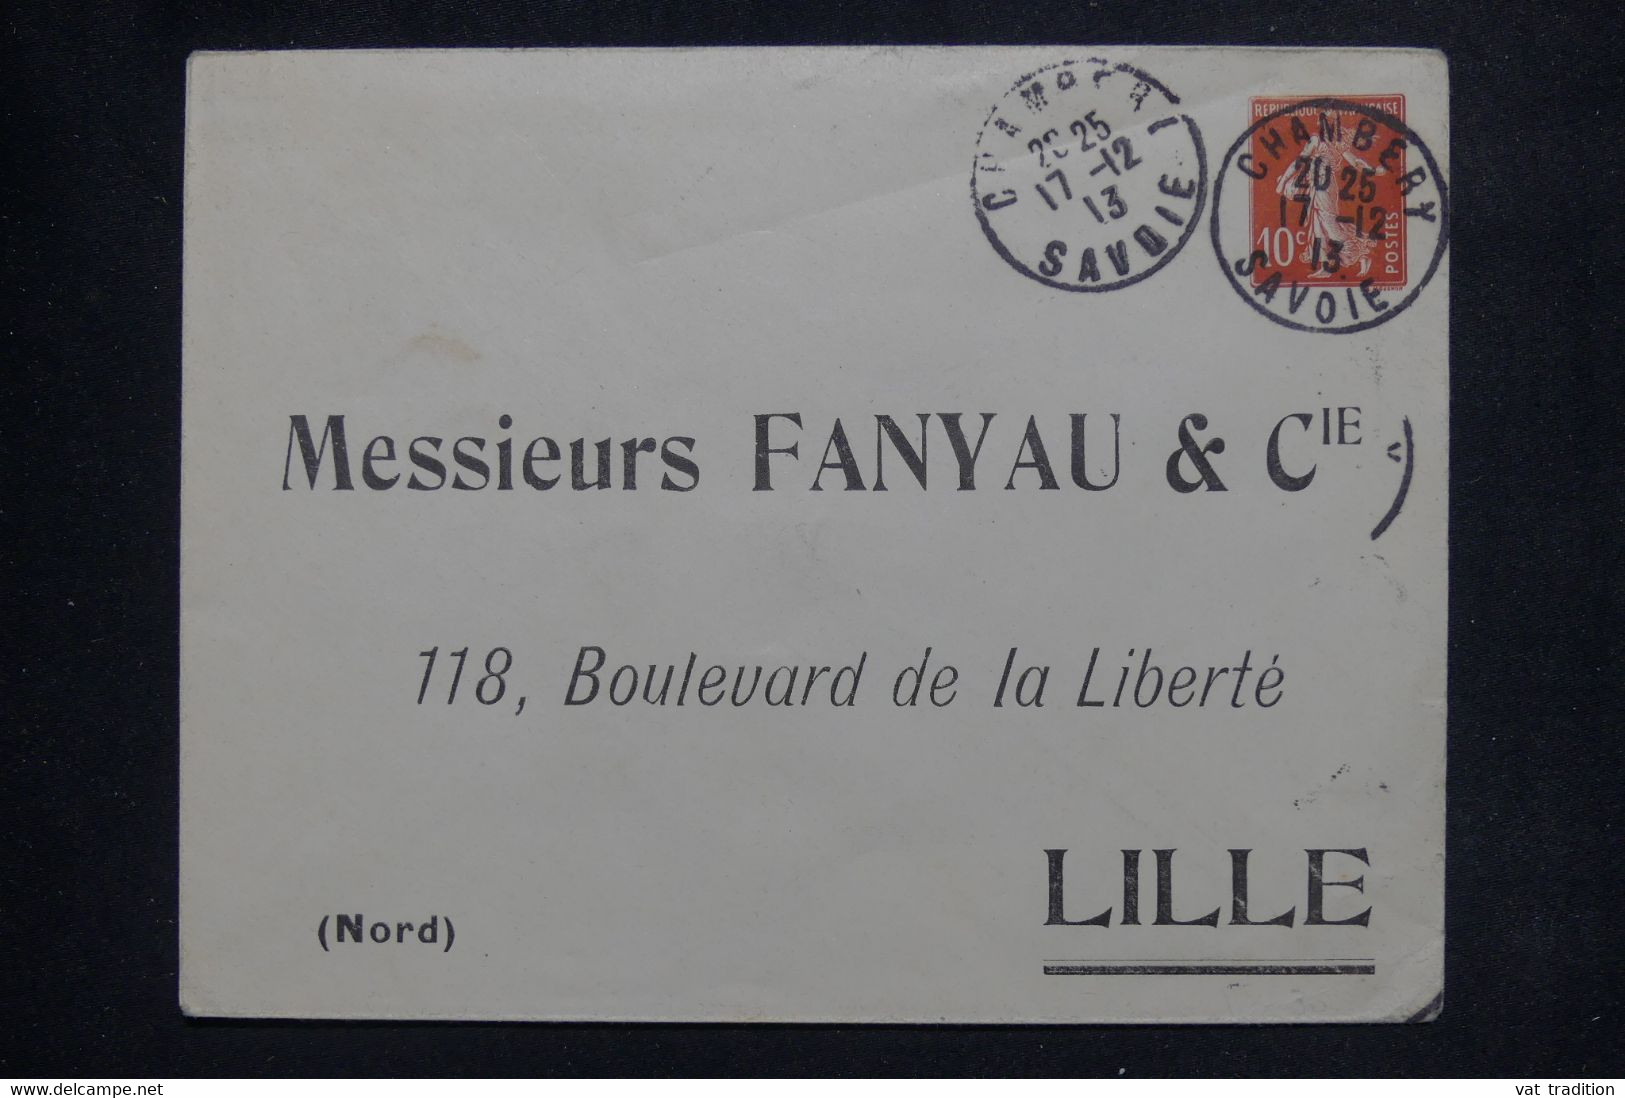 FRANCE - Entier Postal Semeuse ( Enveloppe ) De Chambery Pour Lille En 1913 Avec Repiquage Commercial - L 138143 - Enveloppes Repiquages (avant 1995)